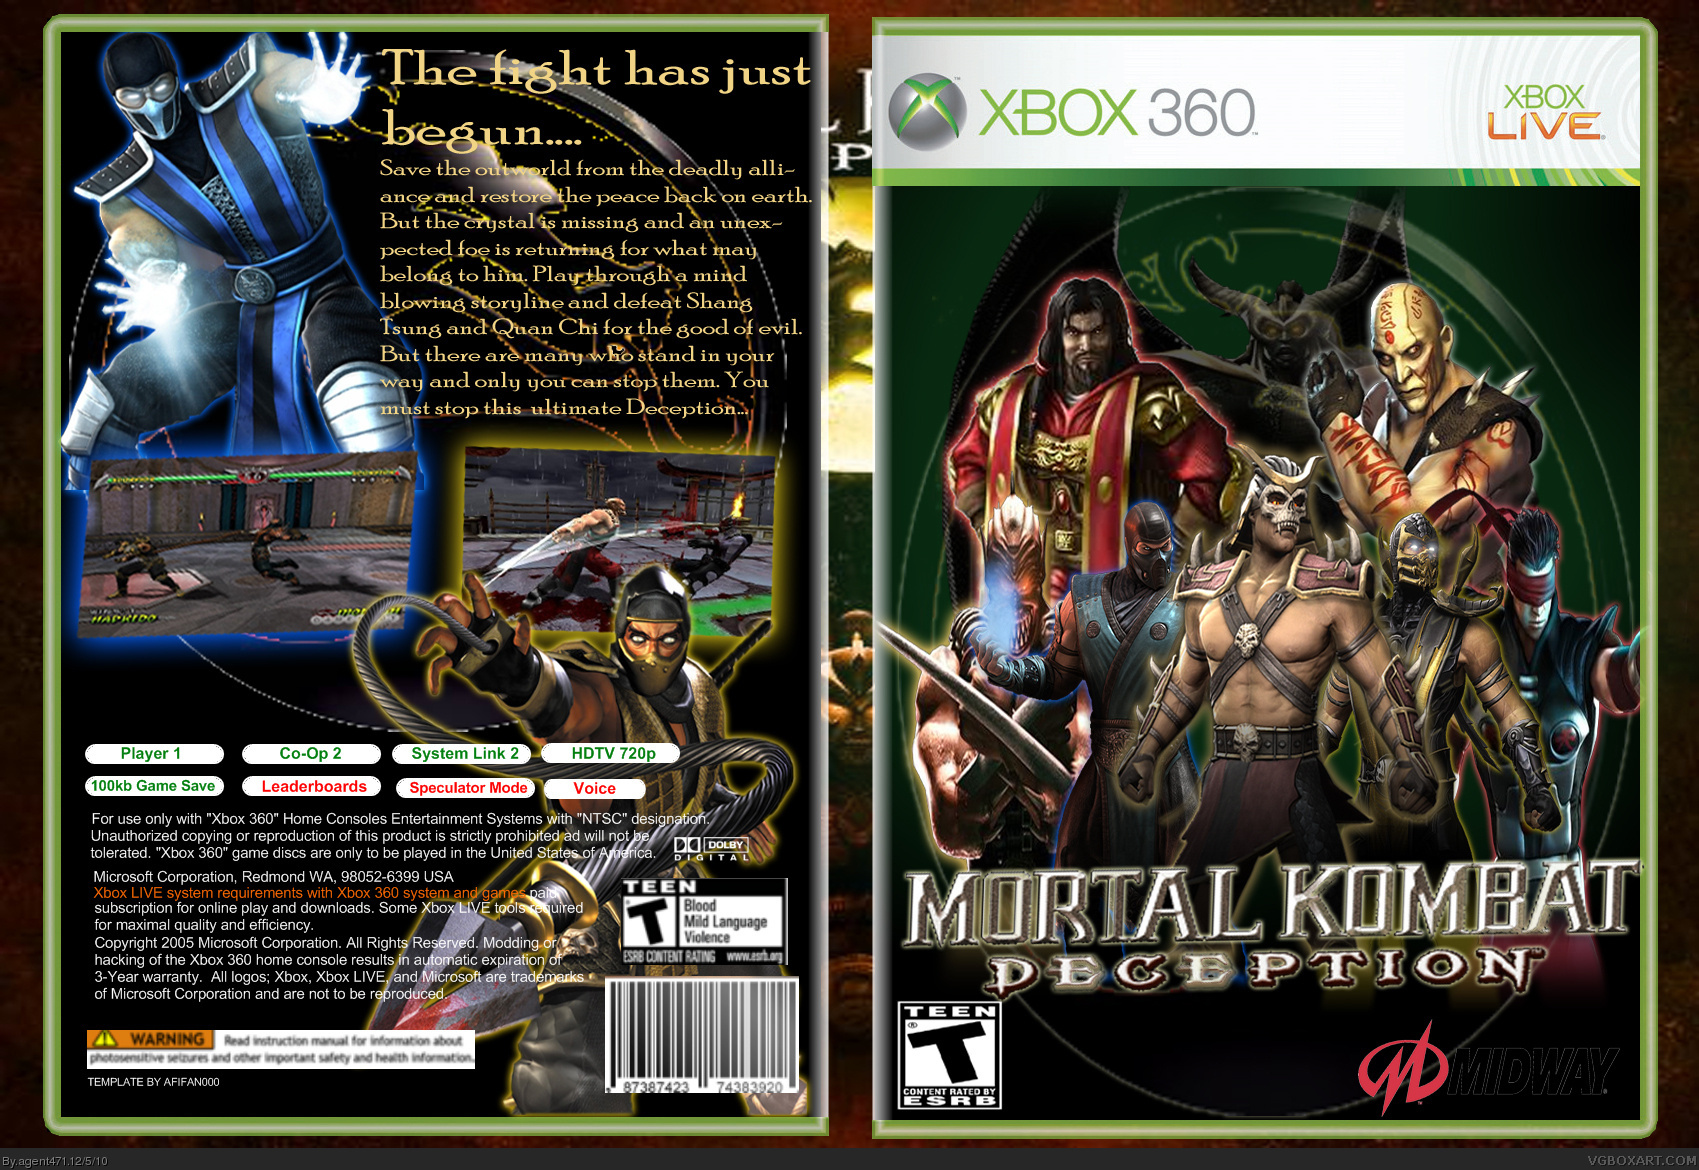 Mortal Kombat Deception box cover